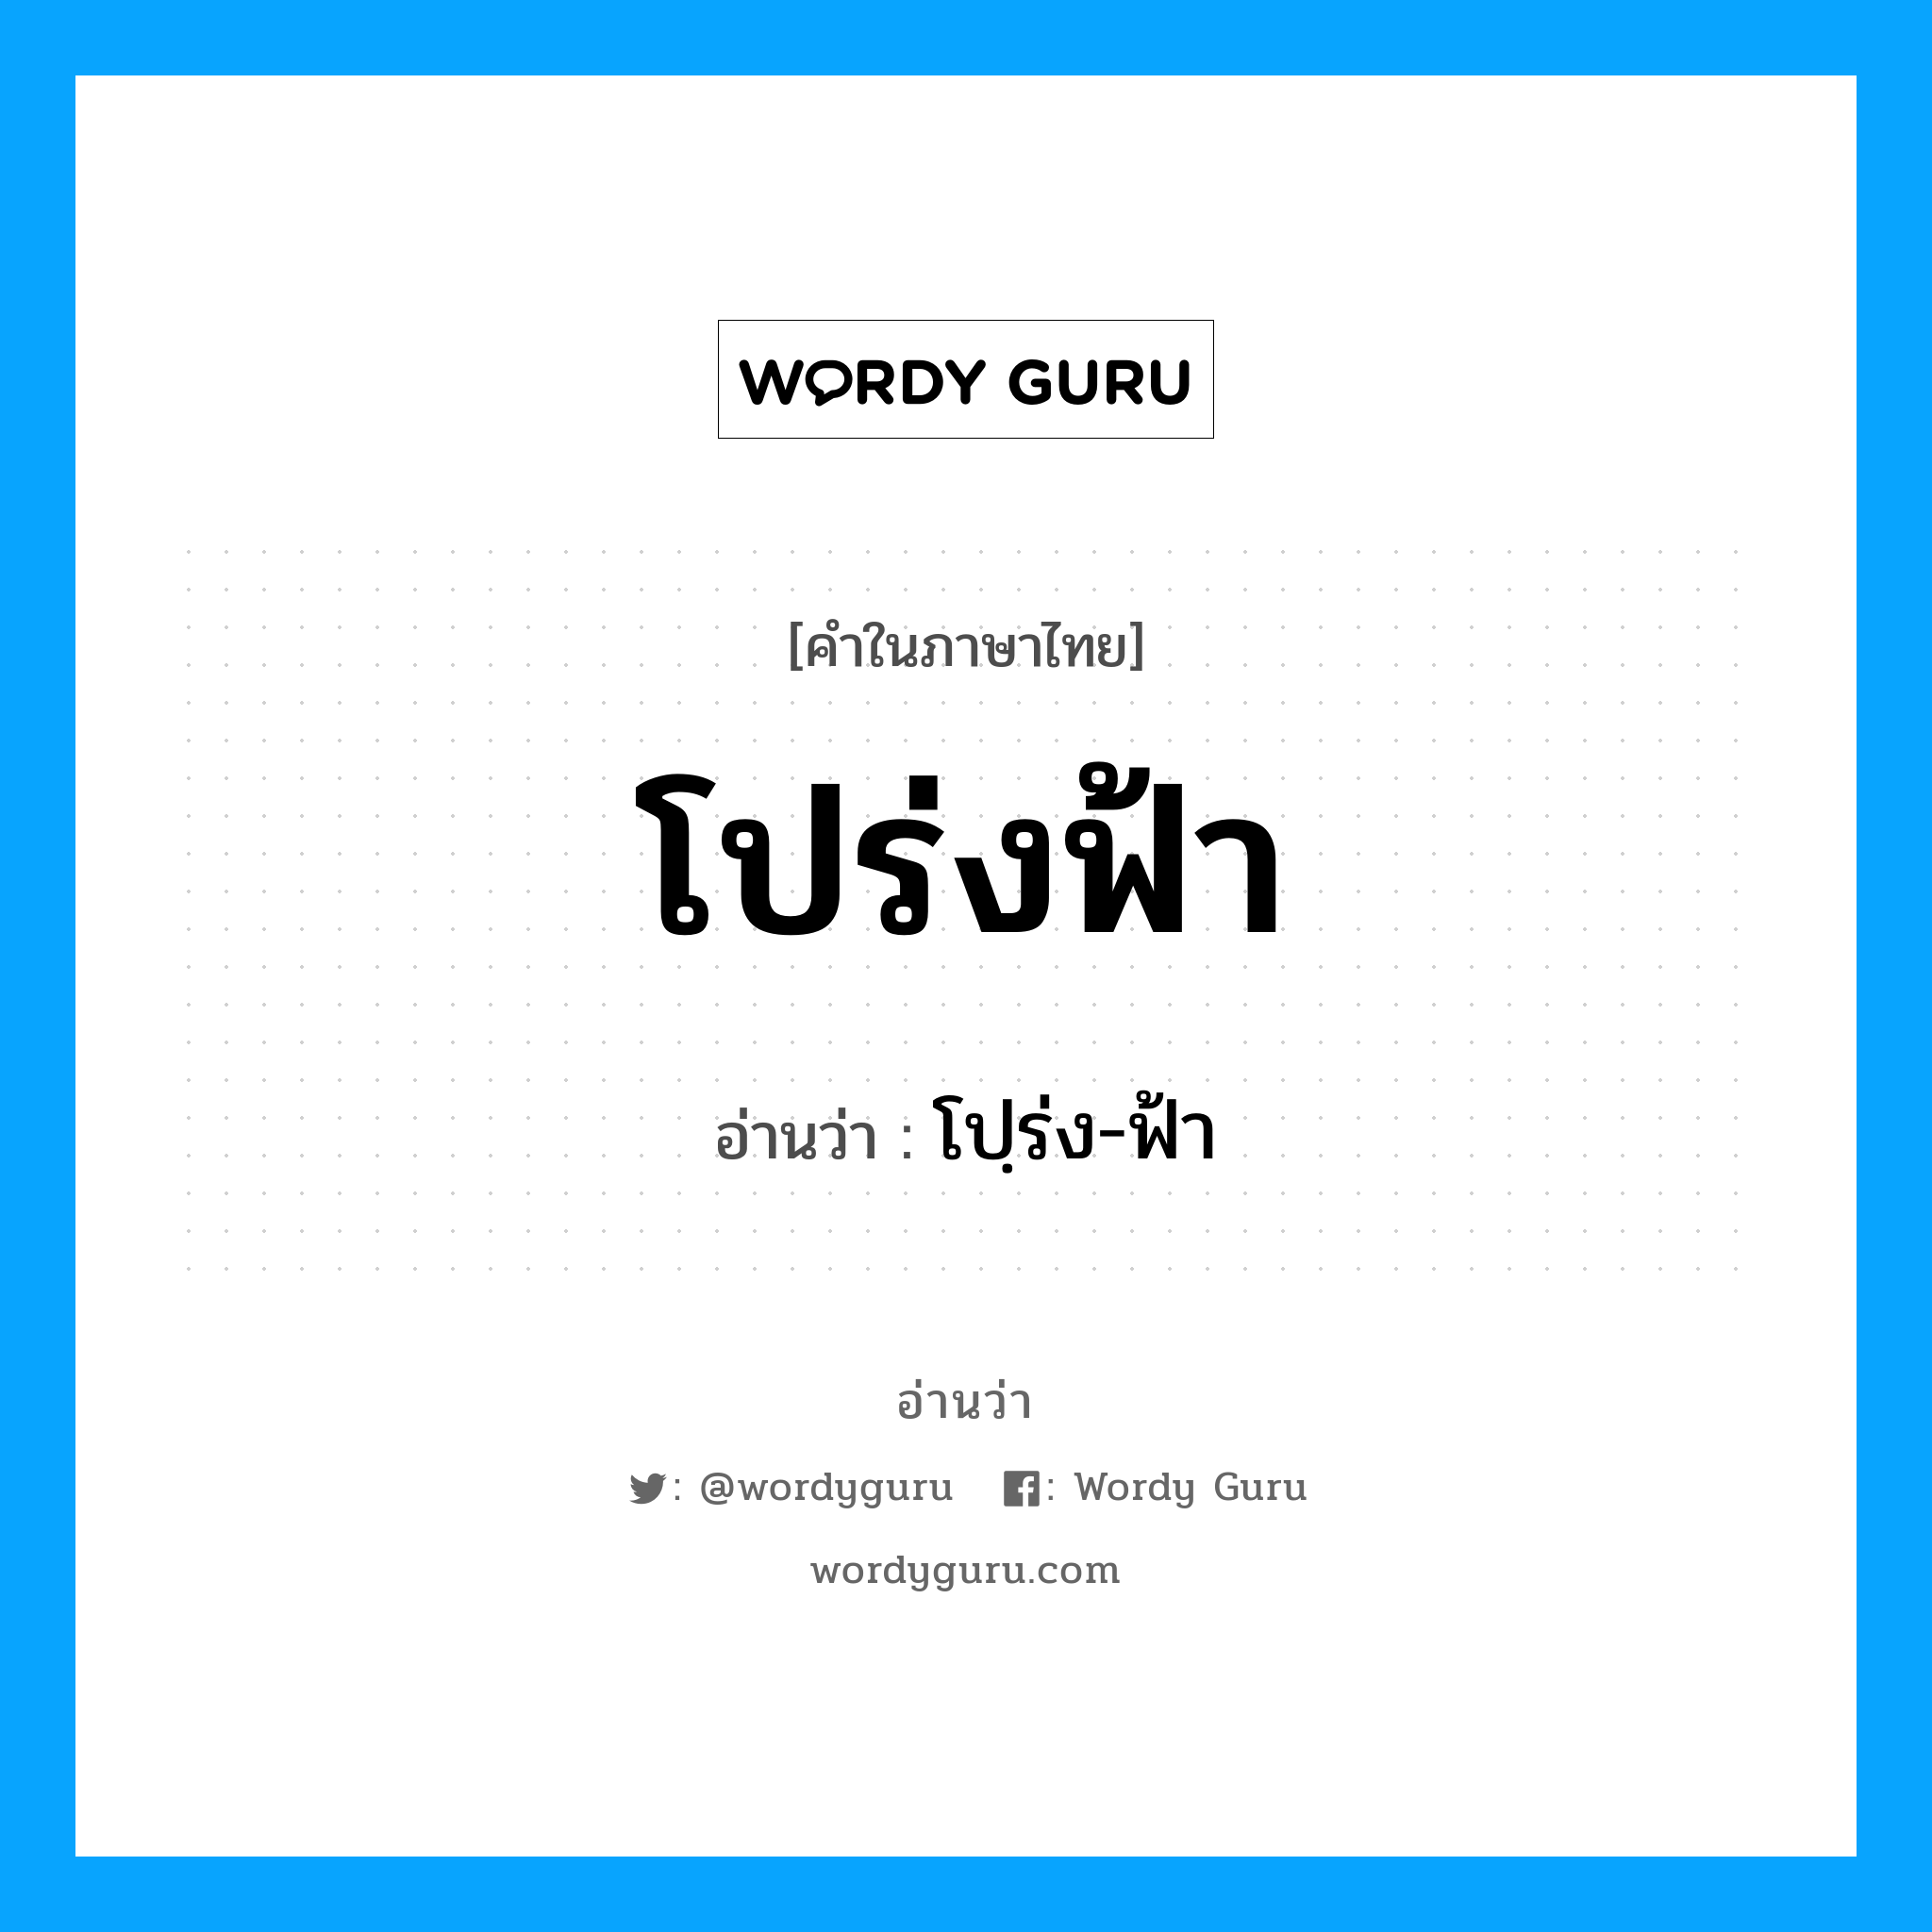 โปฺร่ง-ฟ้า เป็นคำอ่านของคำไหน?, คำในภาษาไทย โปฺร่ง-ฟ้า อ่านว่า โปร่งฟ้า